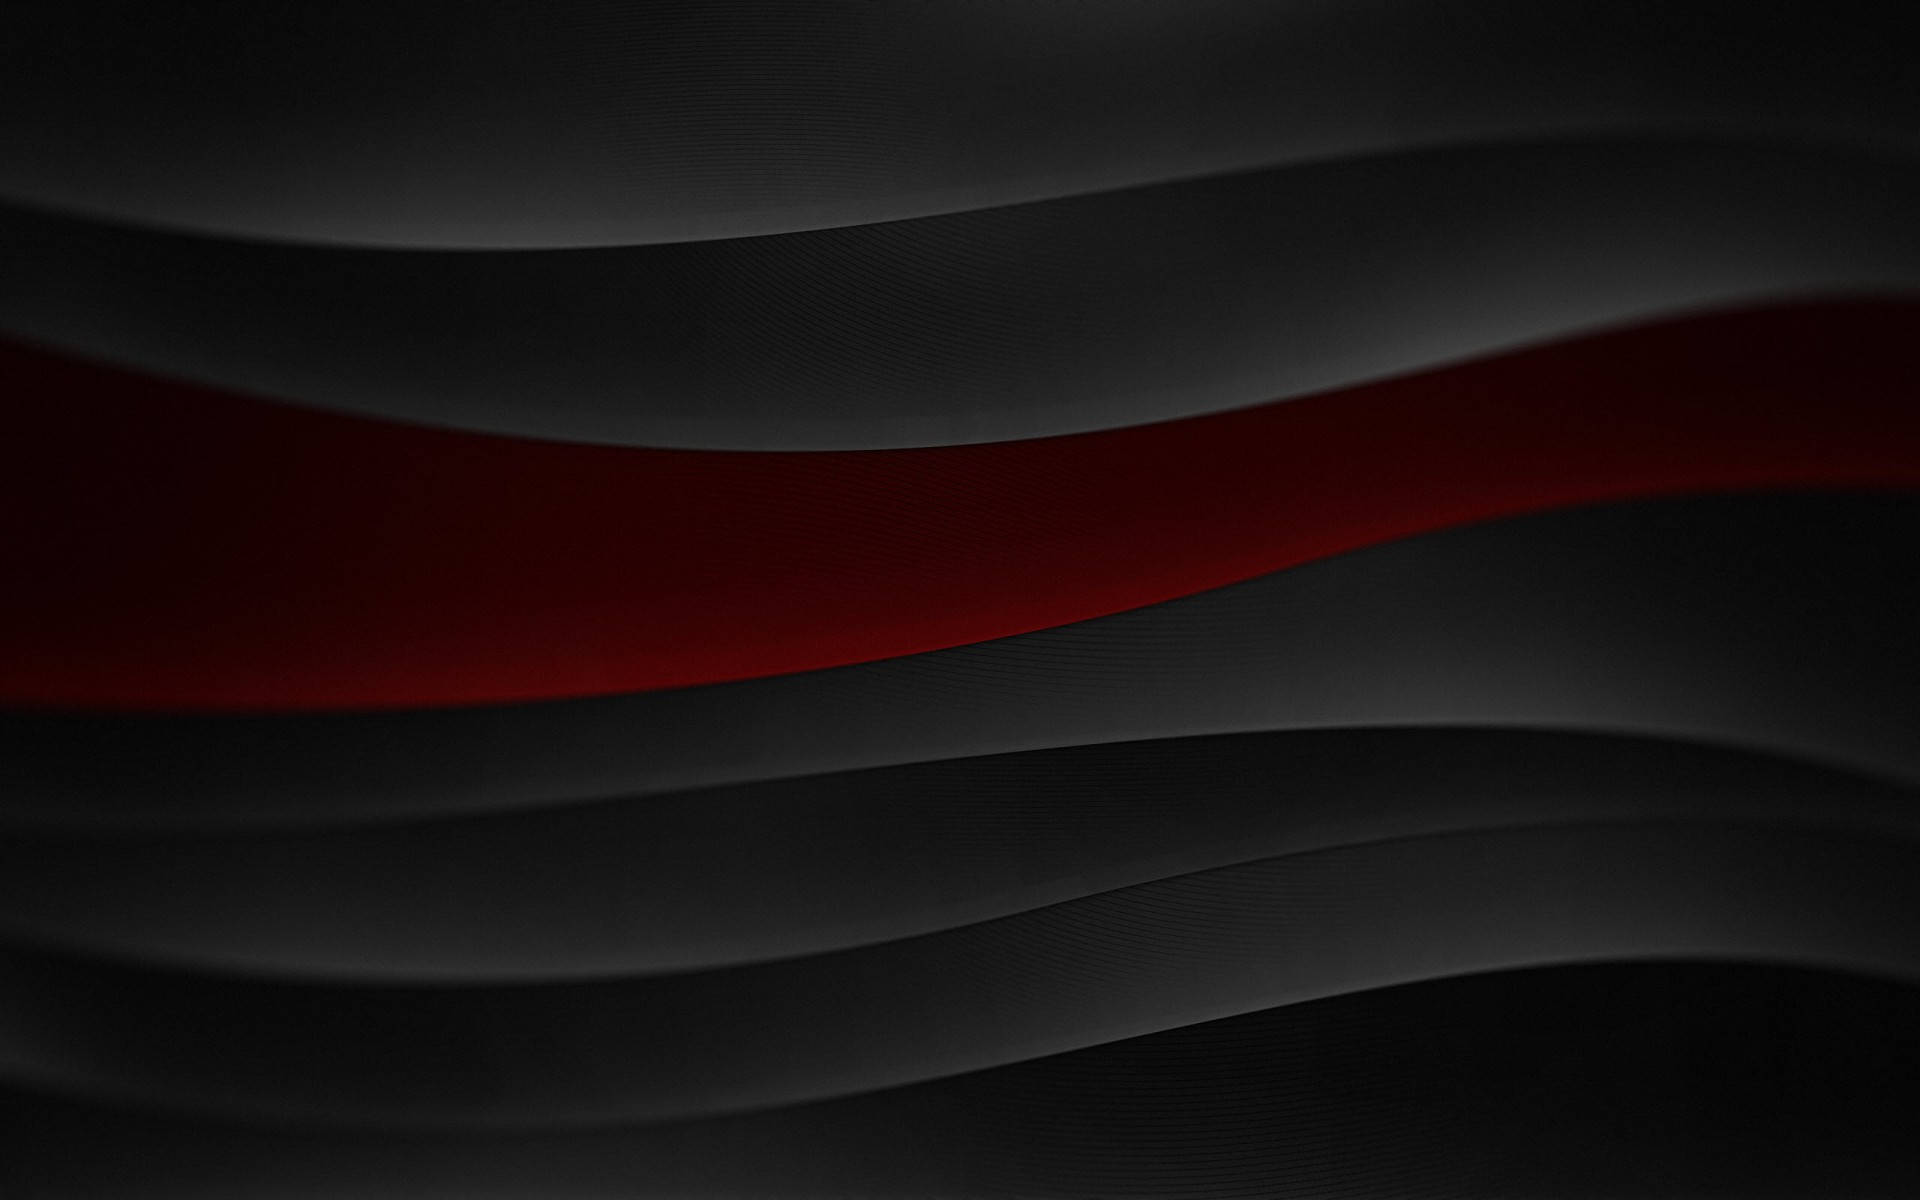 Eineabstrakte Wandpapier Mit Schwarzer Und Roter Farbe Sowie Wellenförmigen Linien. Wallpaper